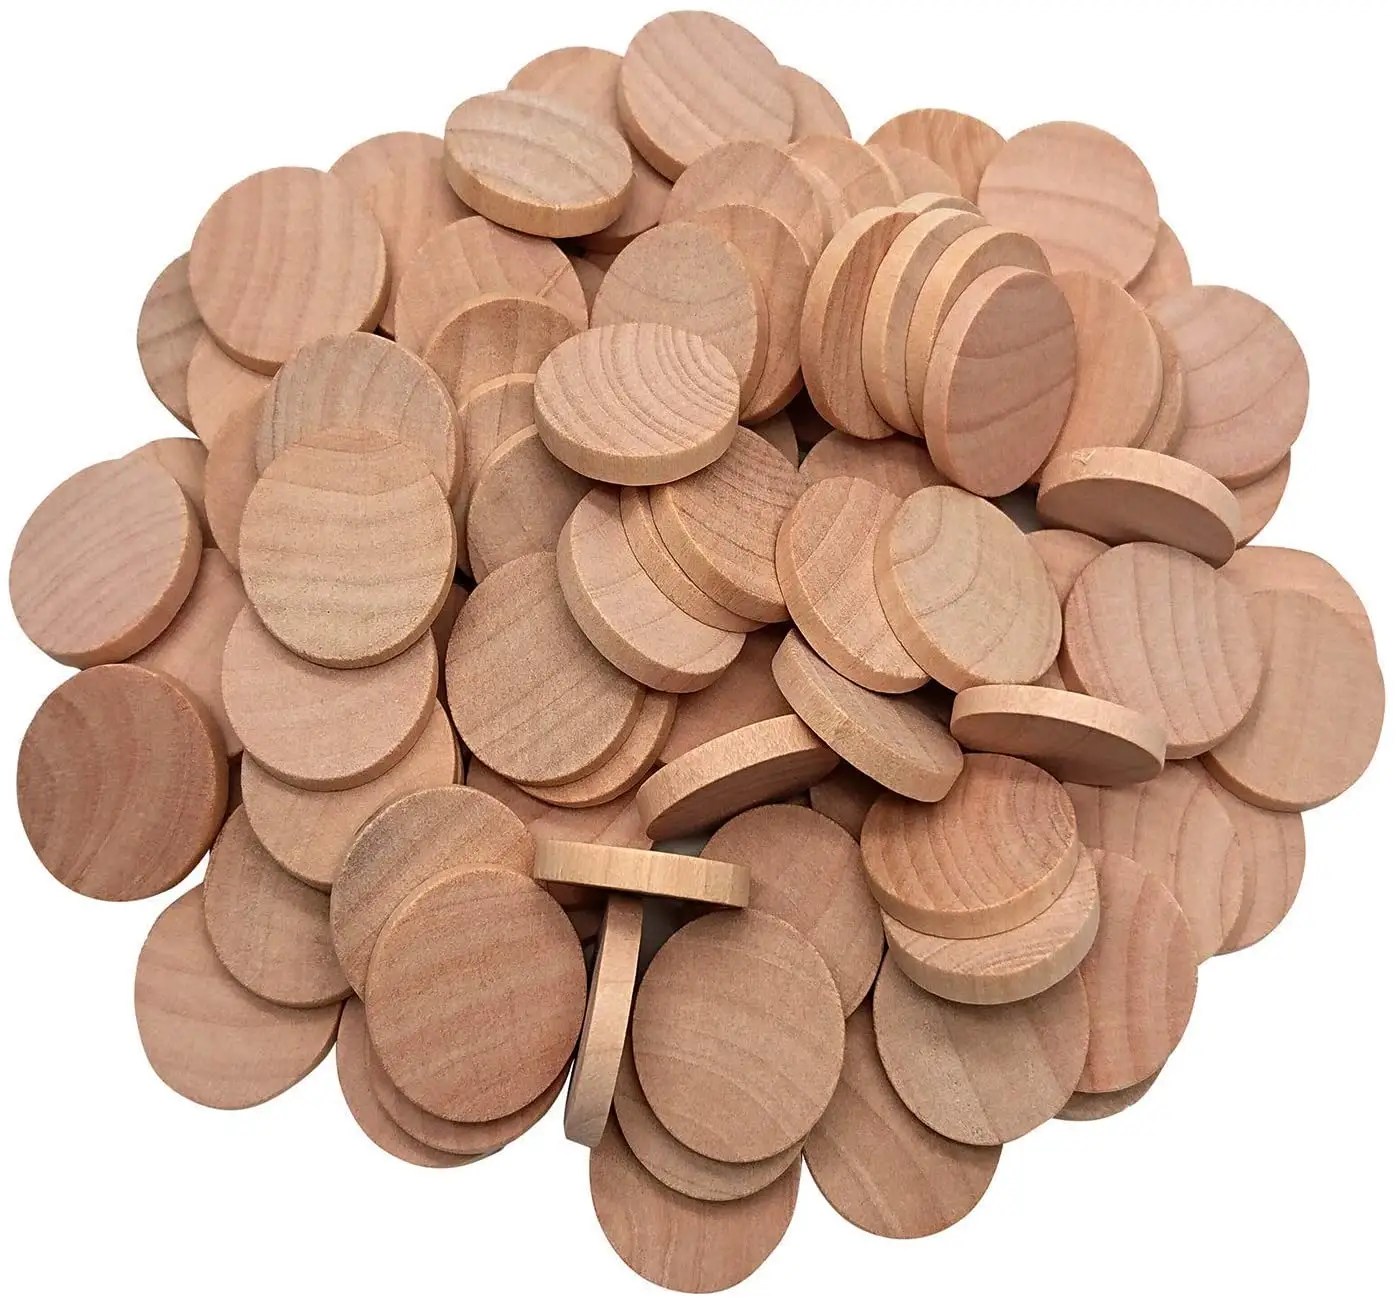 Rodajas de madera de 1 pulgada redonda inacabado madera 60 pcs estos madera monedas para las artes y la artesanía proyectos juego de piezas de adornos.